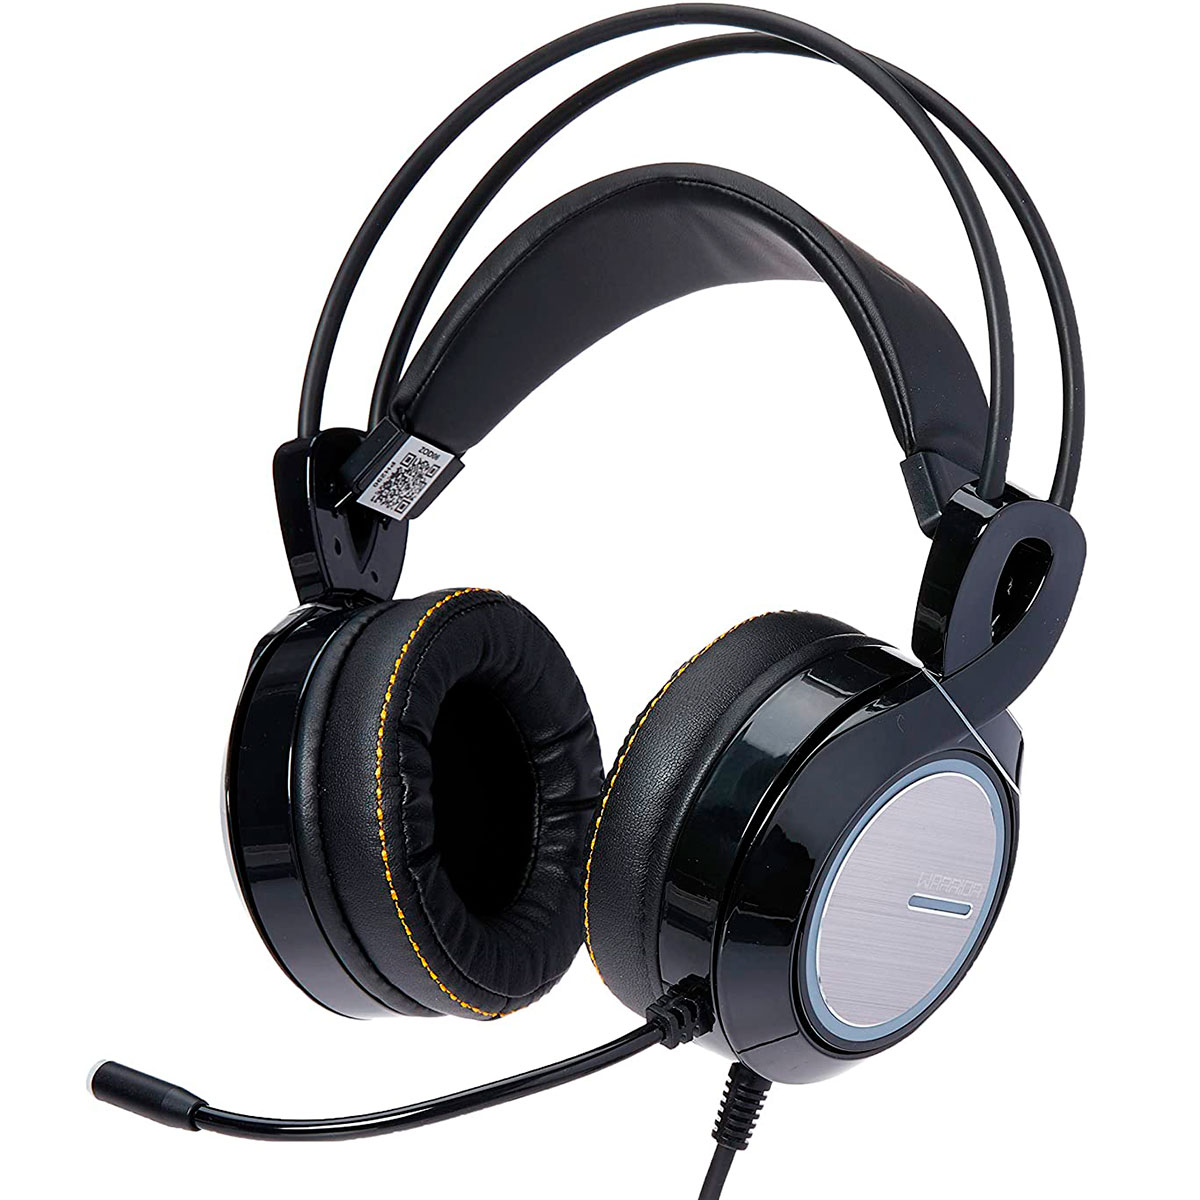 Headset Gamer Multilaser Warrior Thyra - Microfone - RGB - 7.1 - com Vibração - PH290